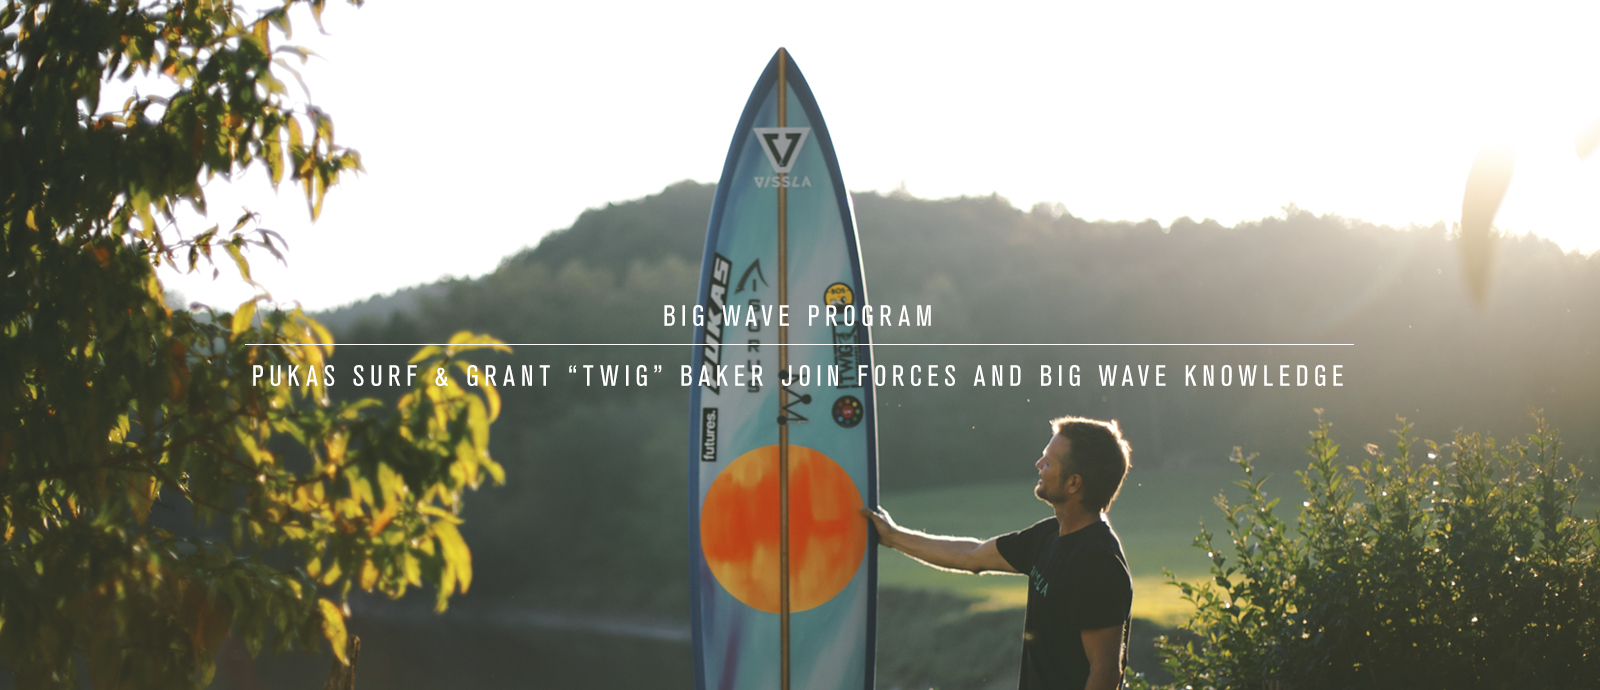 Pukas Surf Grant Twig Baker Big Wave Program Surfboards Header